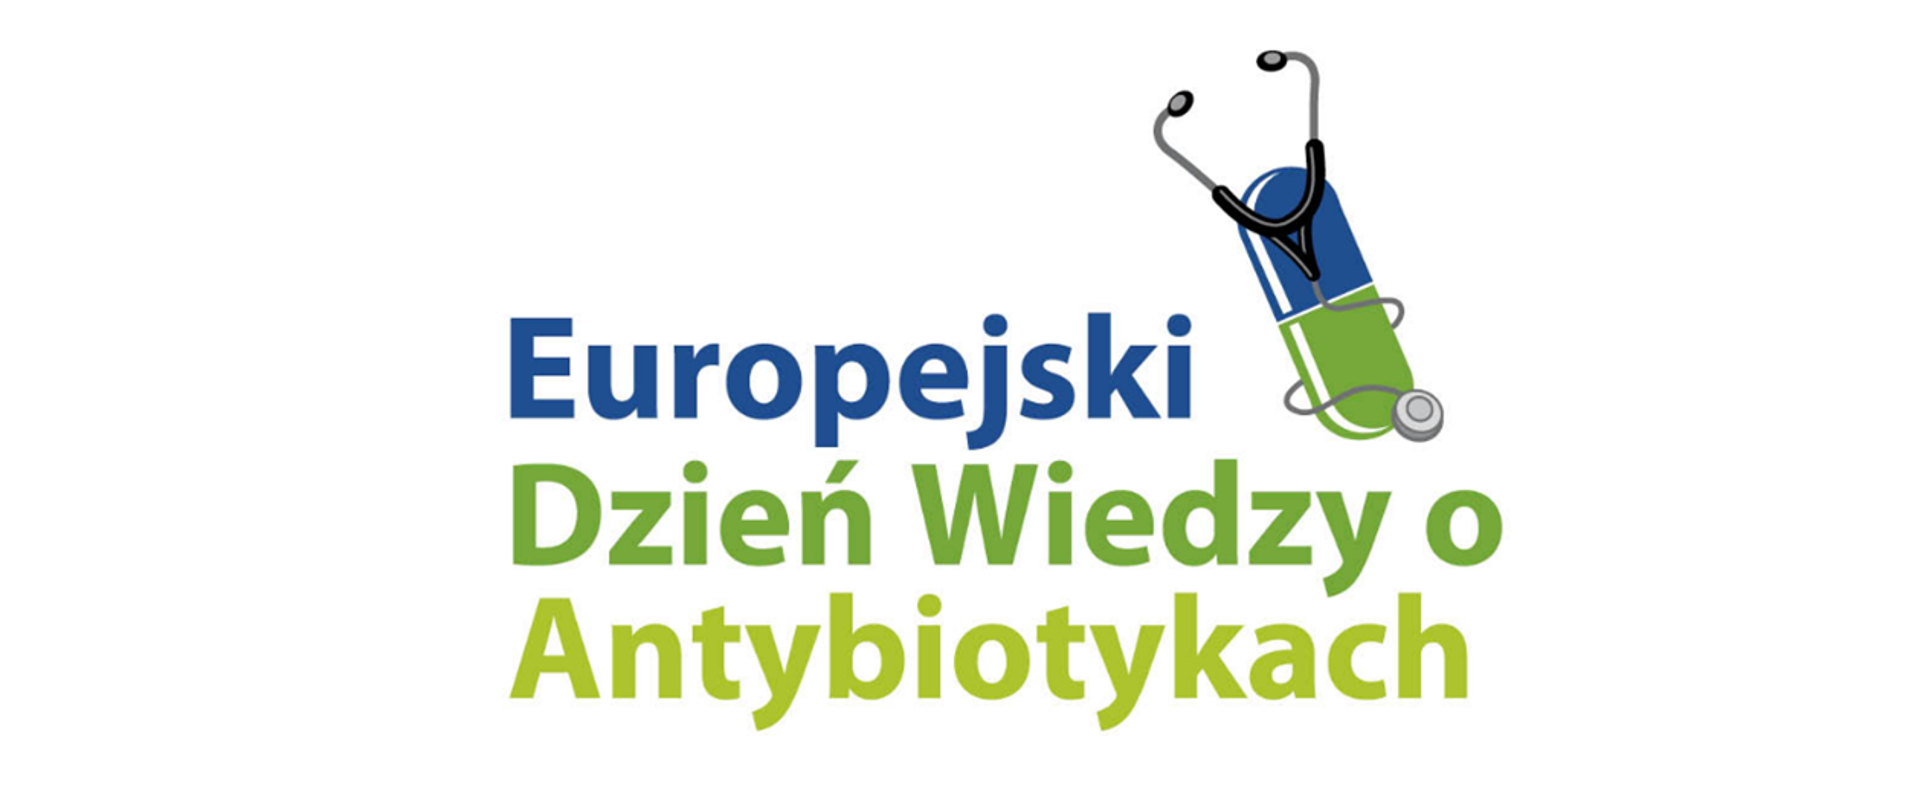 Zdjęcie przedstawia niebiesko-zielony napis "Europejski Dzień Wiedzy o Antybiotykach" oraz kapsułkę antybiotyku wraz z stetoskopem